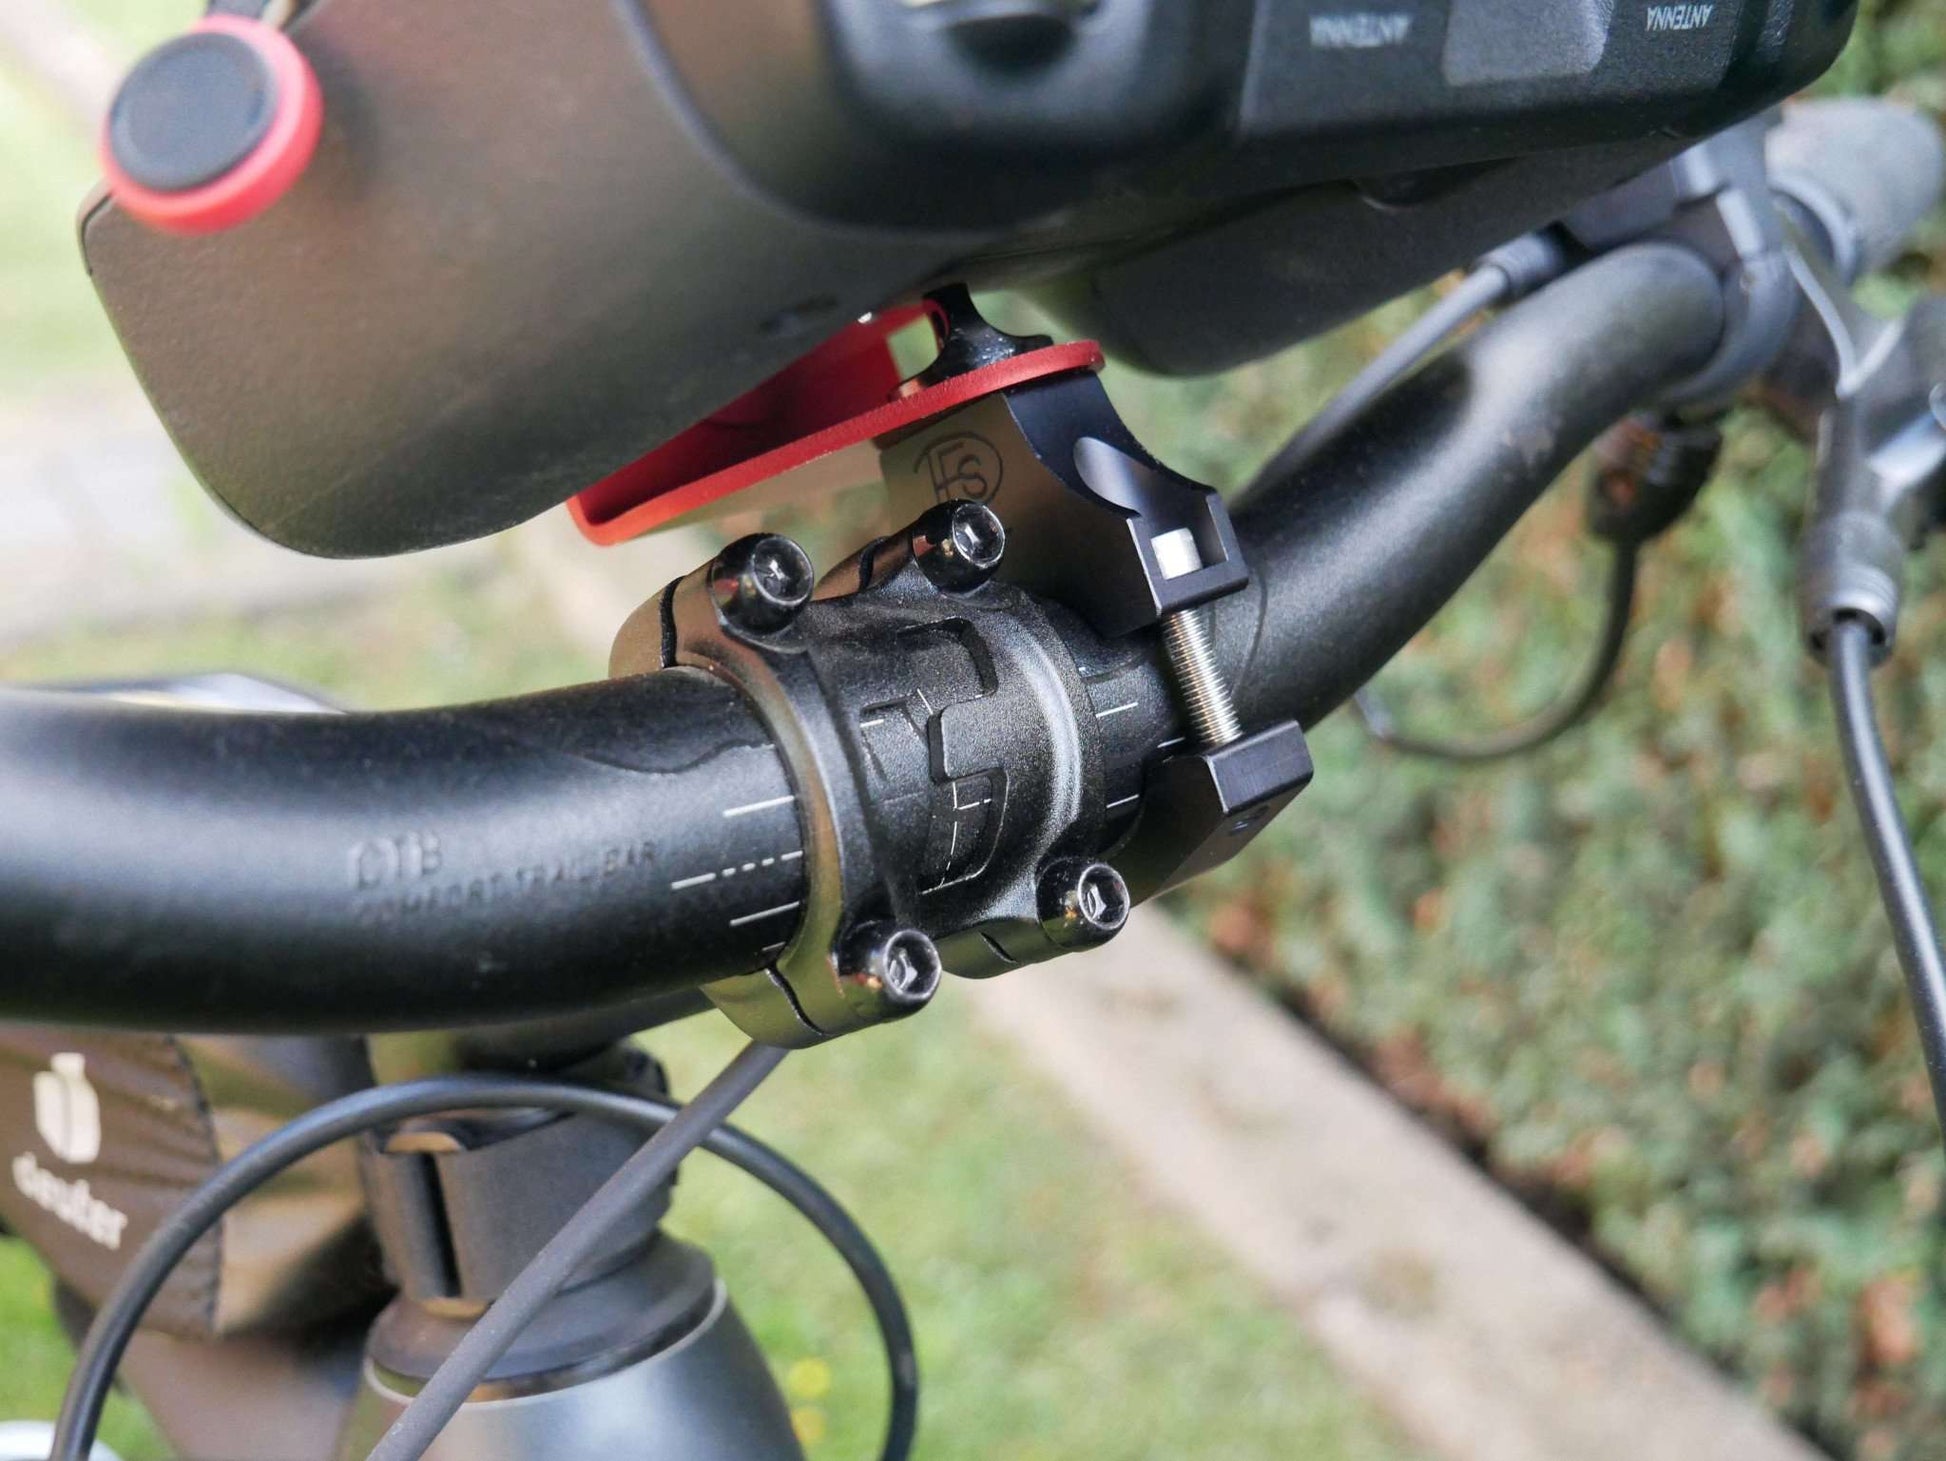 Nähere Vorderansicht montierter Lenkradhalter mit DJI RC Plus Controller & Stativhalter am Fahrrad